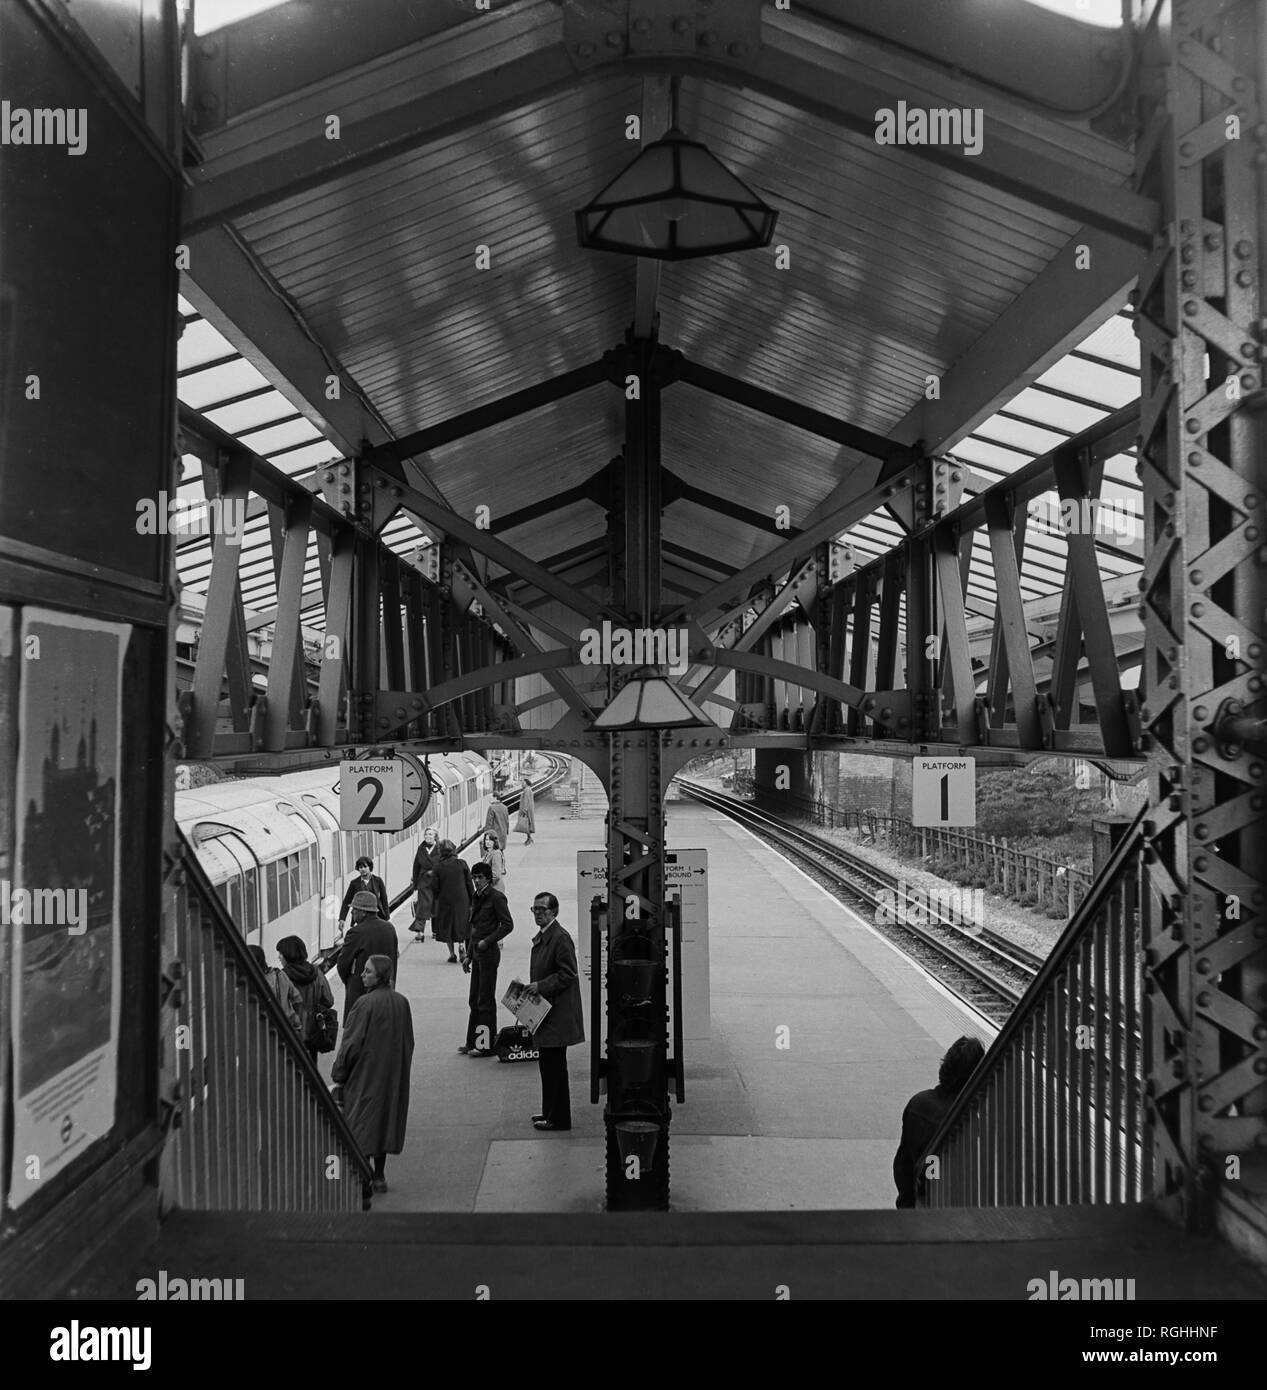 Image d'archive de passagers en attente sur la plate-forme d'une station de la ligne du nord de surface, Londres, Angleterre, 1979 Banque D'Images